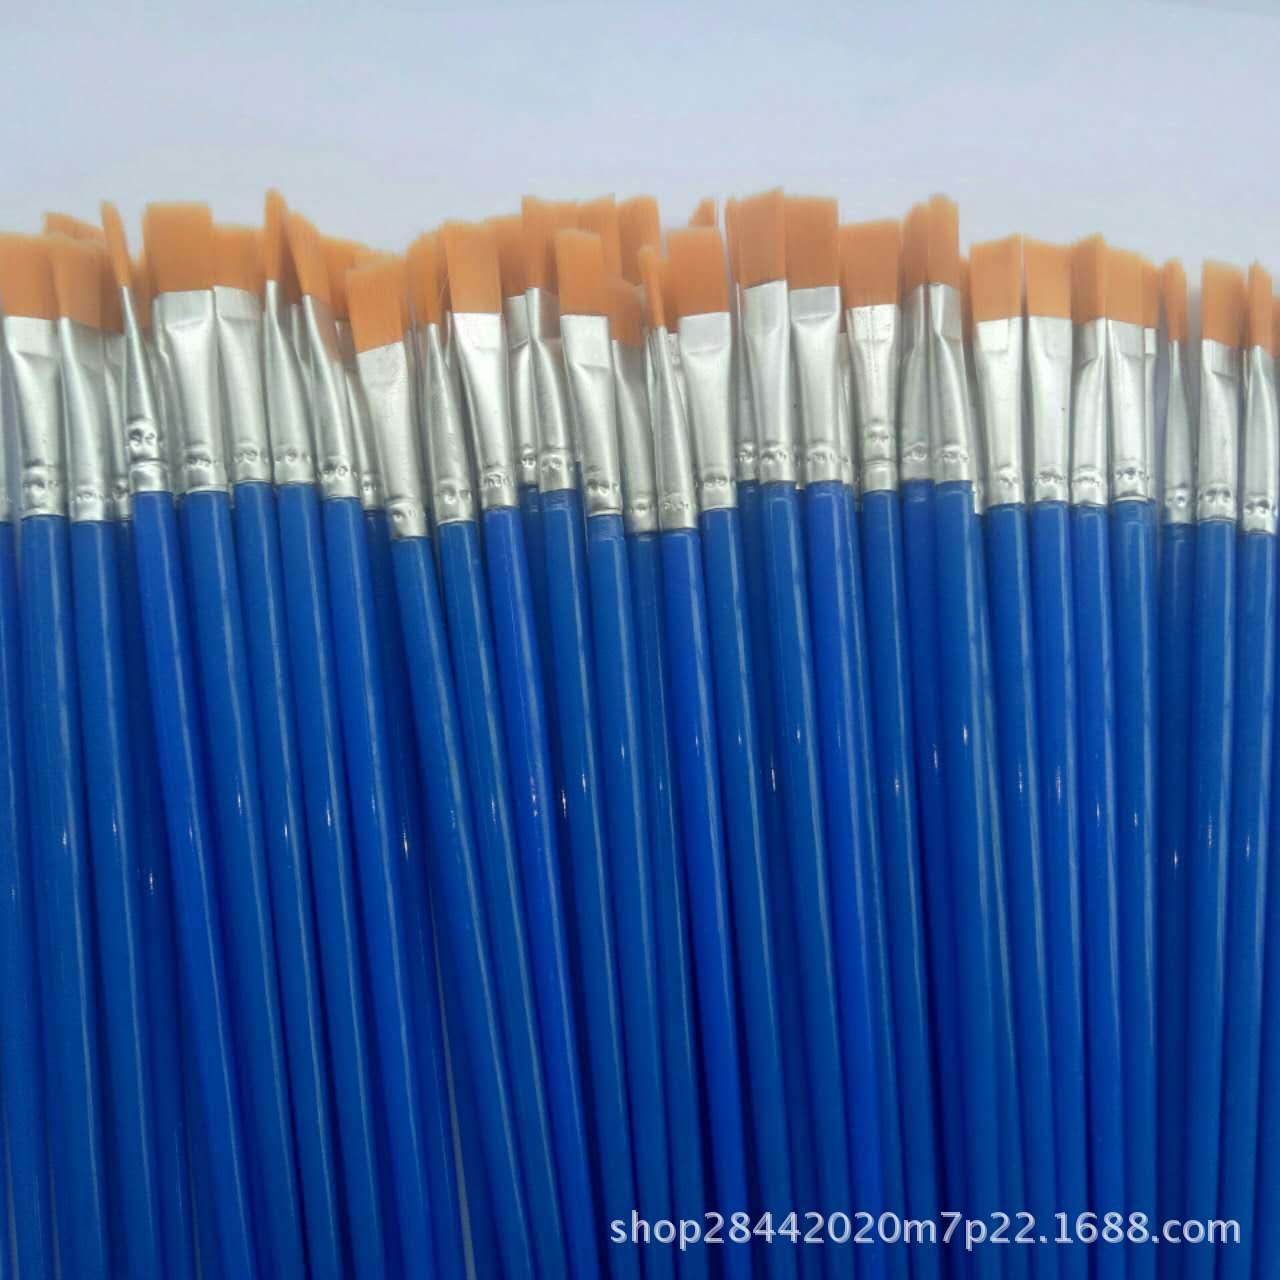 单支起售学生塑料尼龙毛画笔    适用于水彩水粉丙烯油画颜料笔刷详情图4